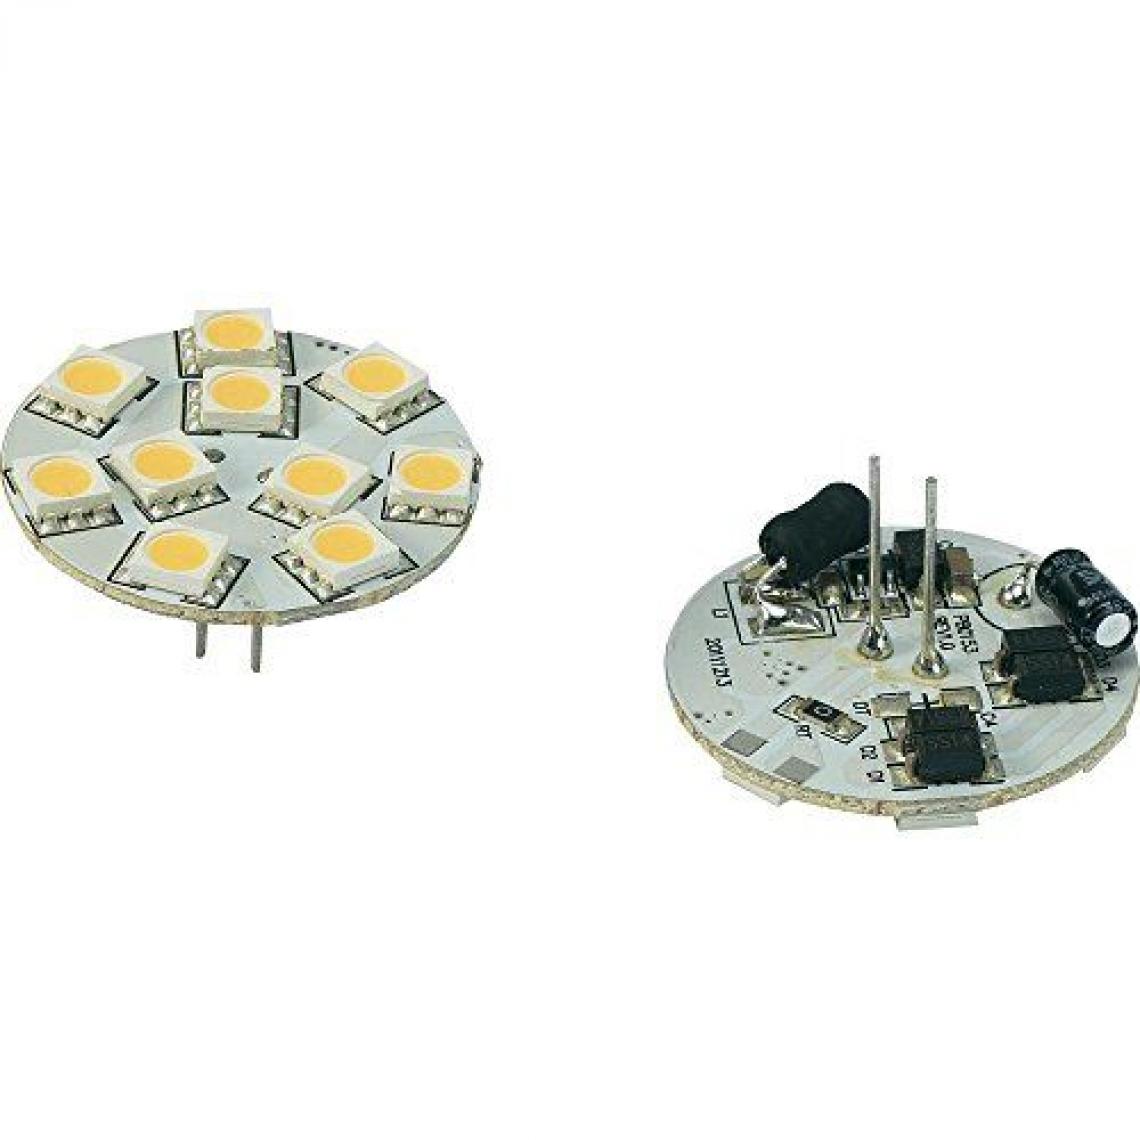 Inconnu - Ampoule LED unicolore G4 Renkforce 792441 à broches 1.5 W = 10 W blanc chaud (Ø x L) 30 mm x 30 mm EEC: n/a 1 pc(s) - Ampoules LED